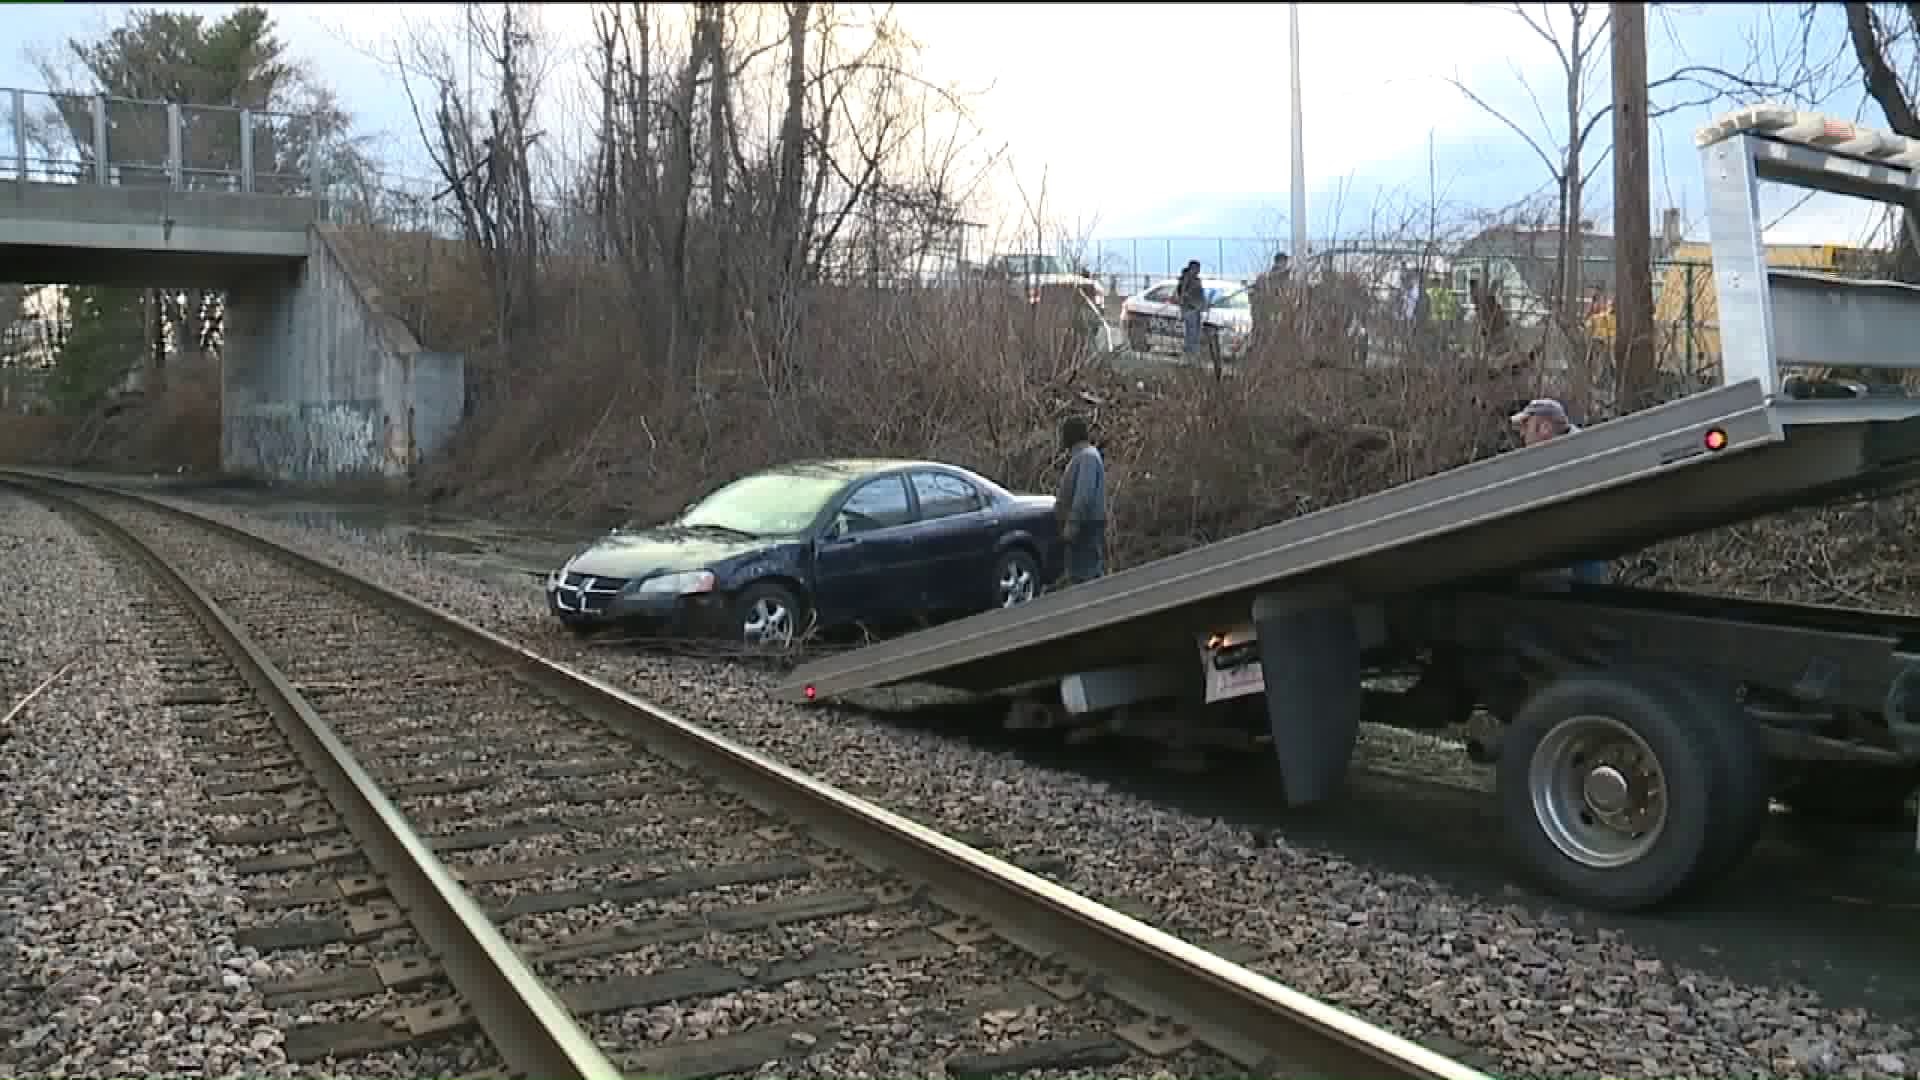 Car Crash in Scranton Forces Train to Stop